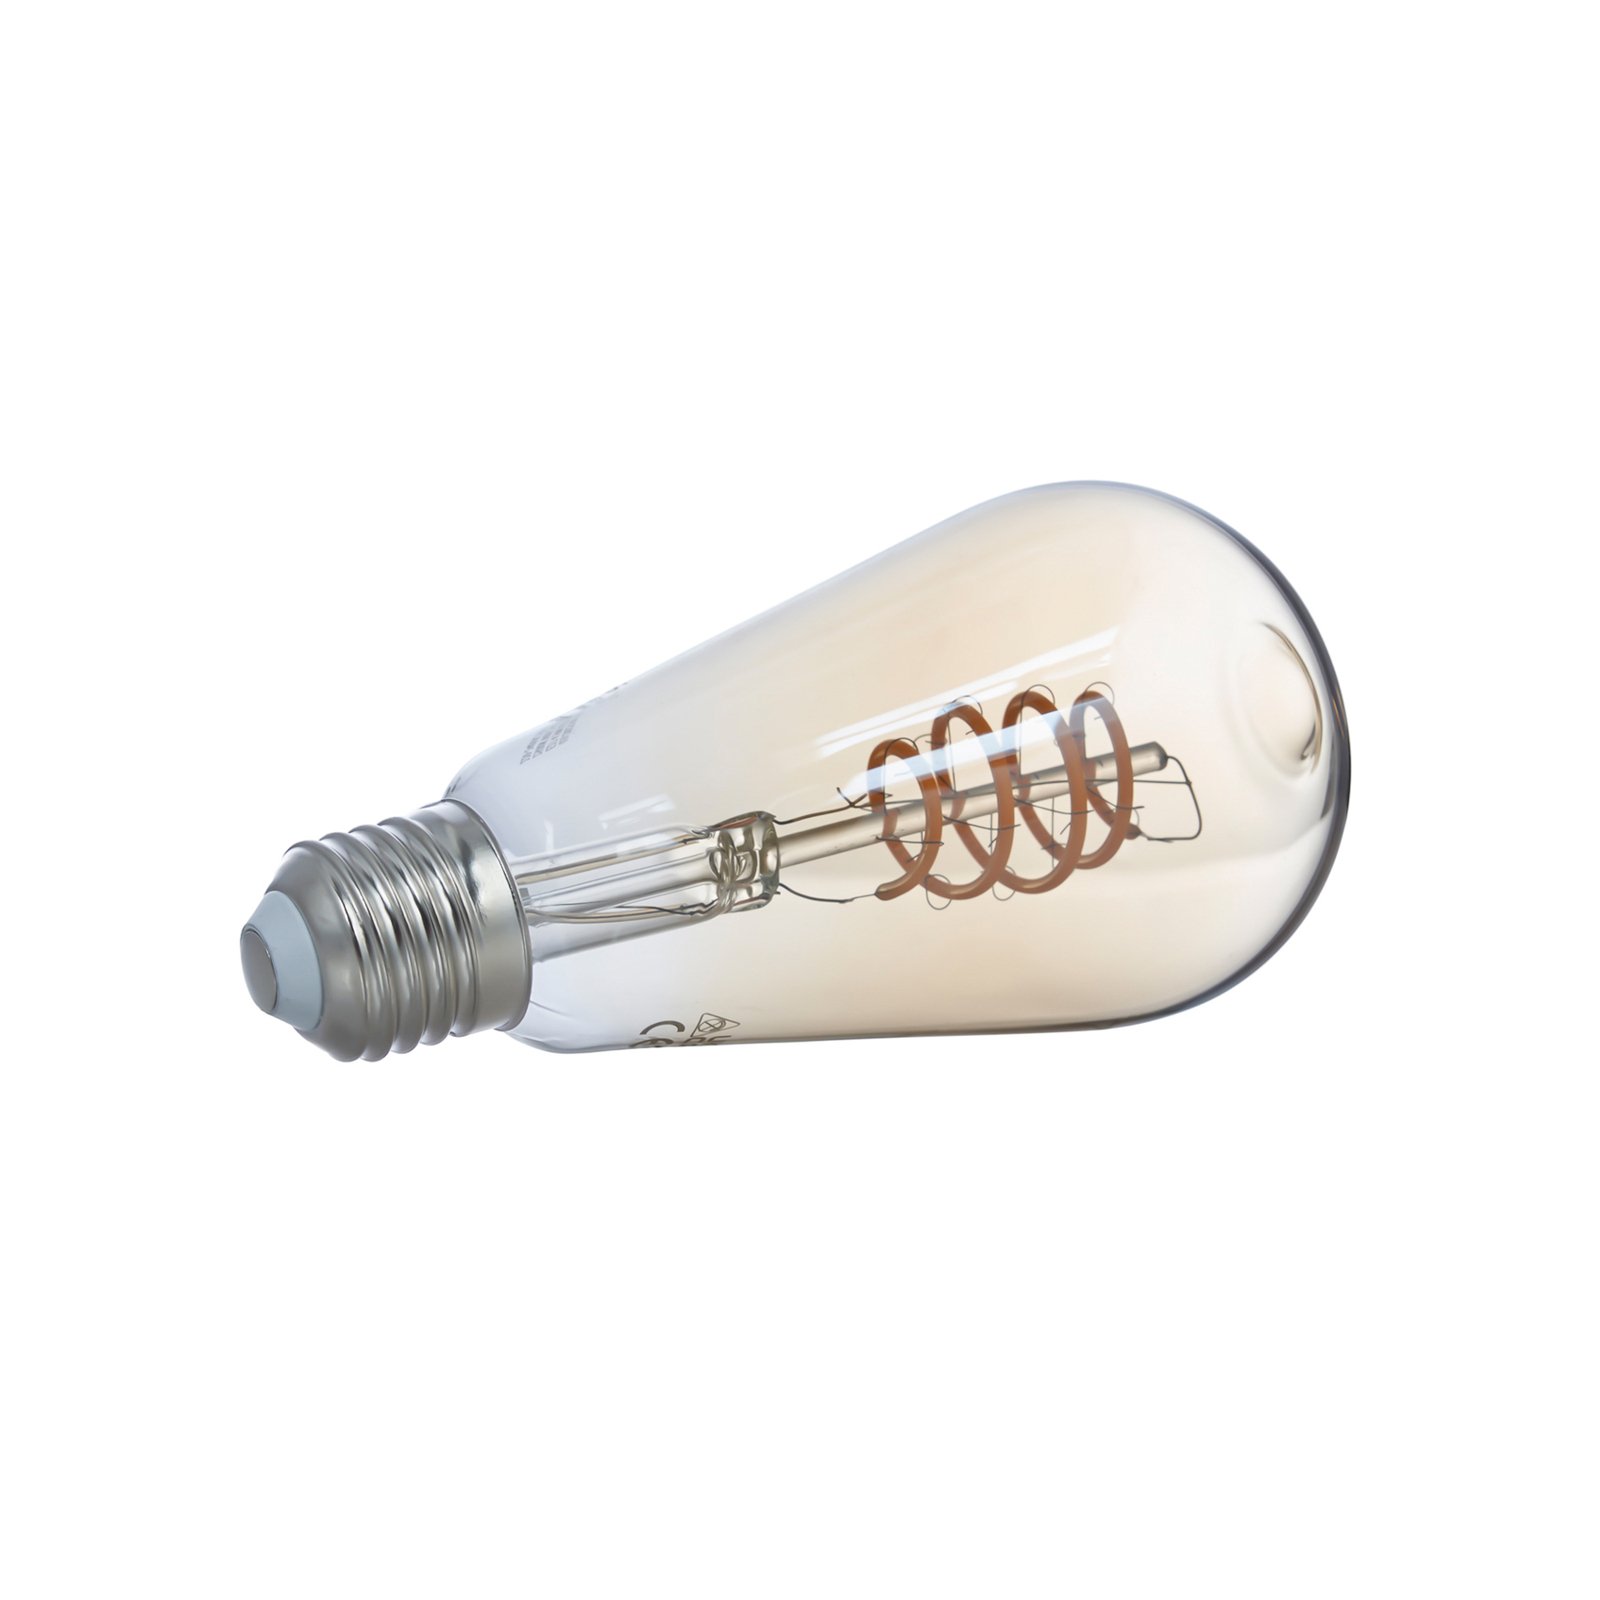 LUUMR Smart LED, 2 darabos készlet, E27, ST64, 4.9W, sárga, világos, Tuya